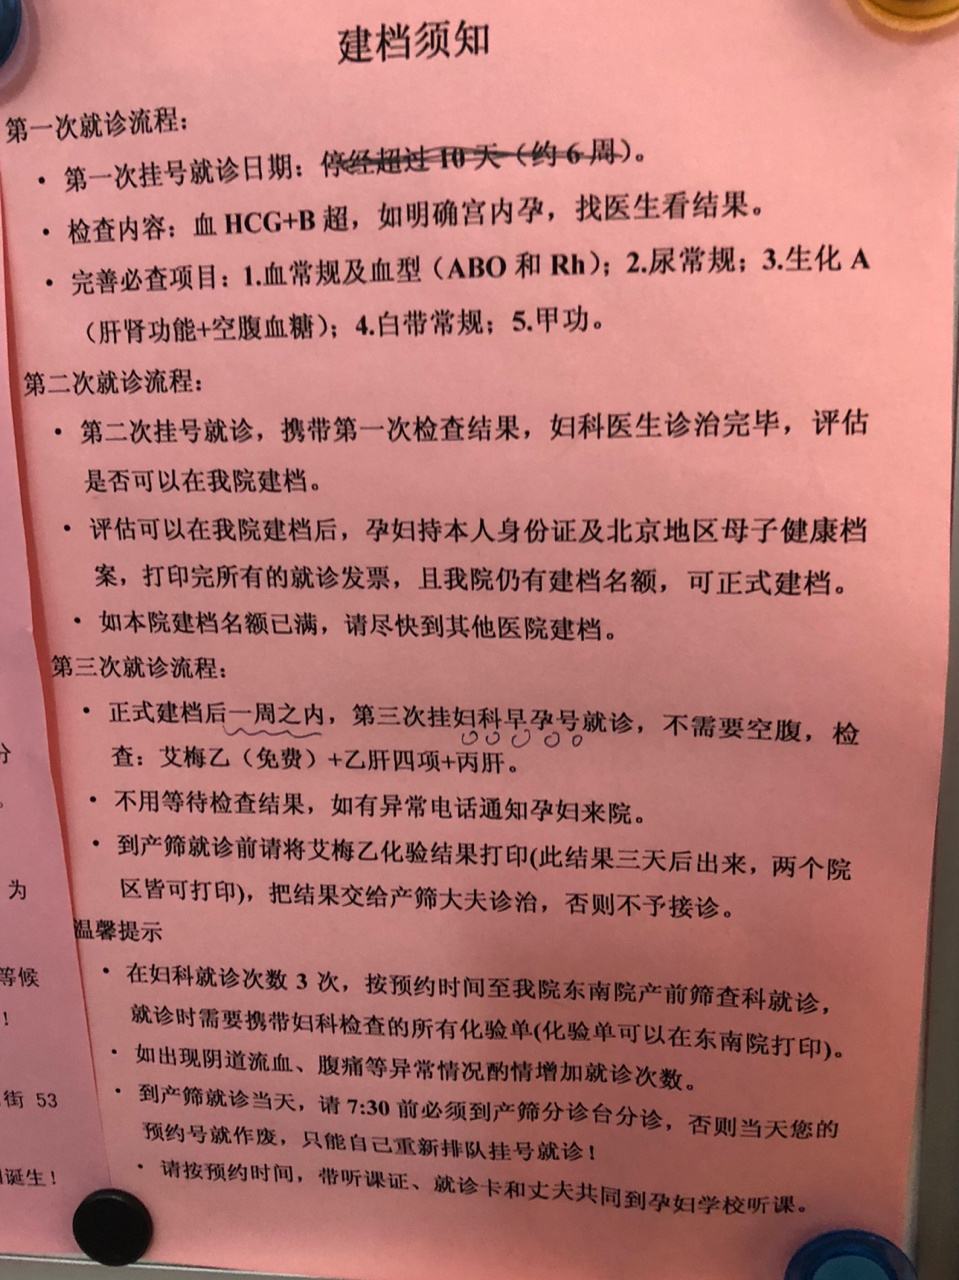 关于北京市海淀妇幼保健院办法多,价格不贵的信息